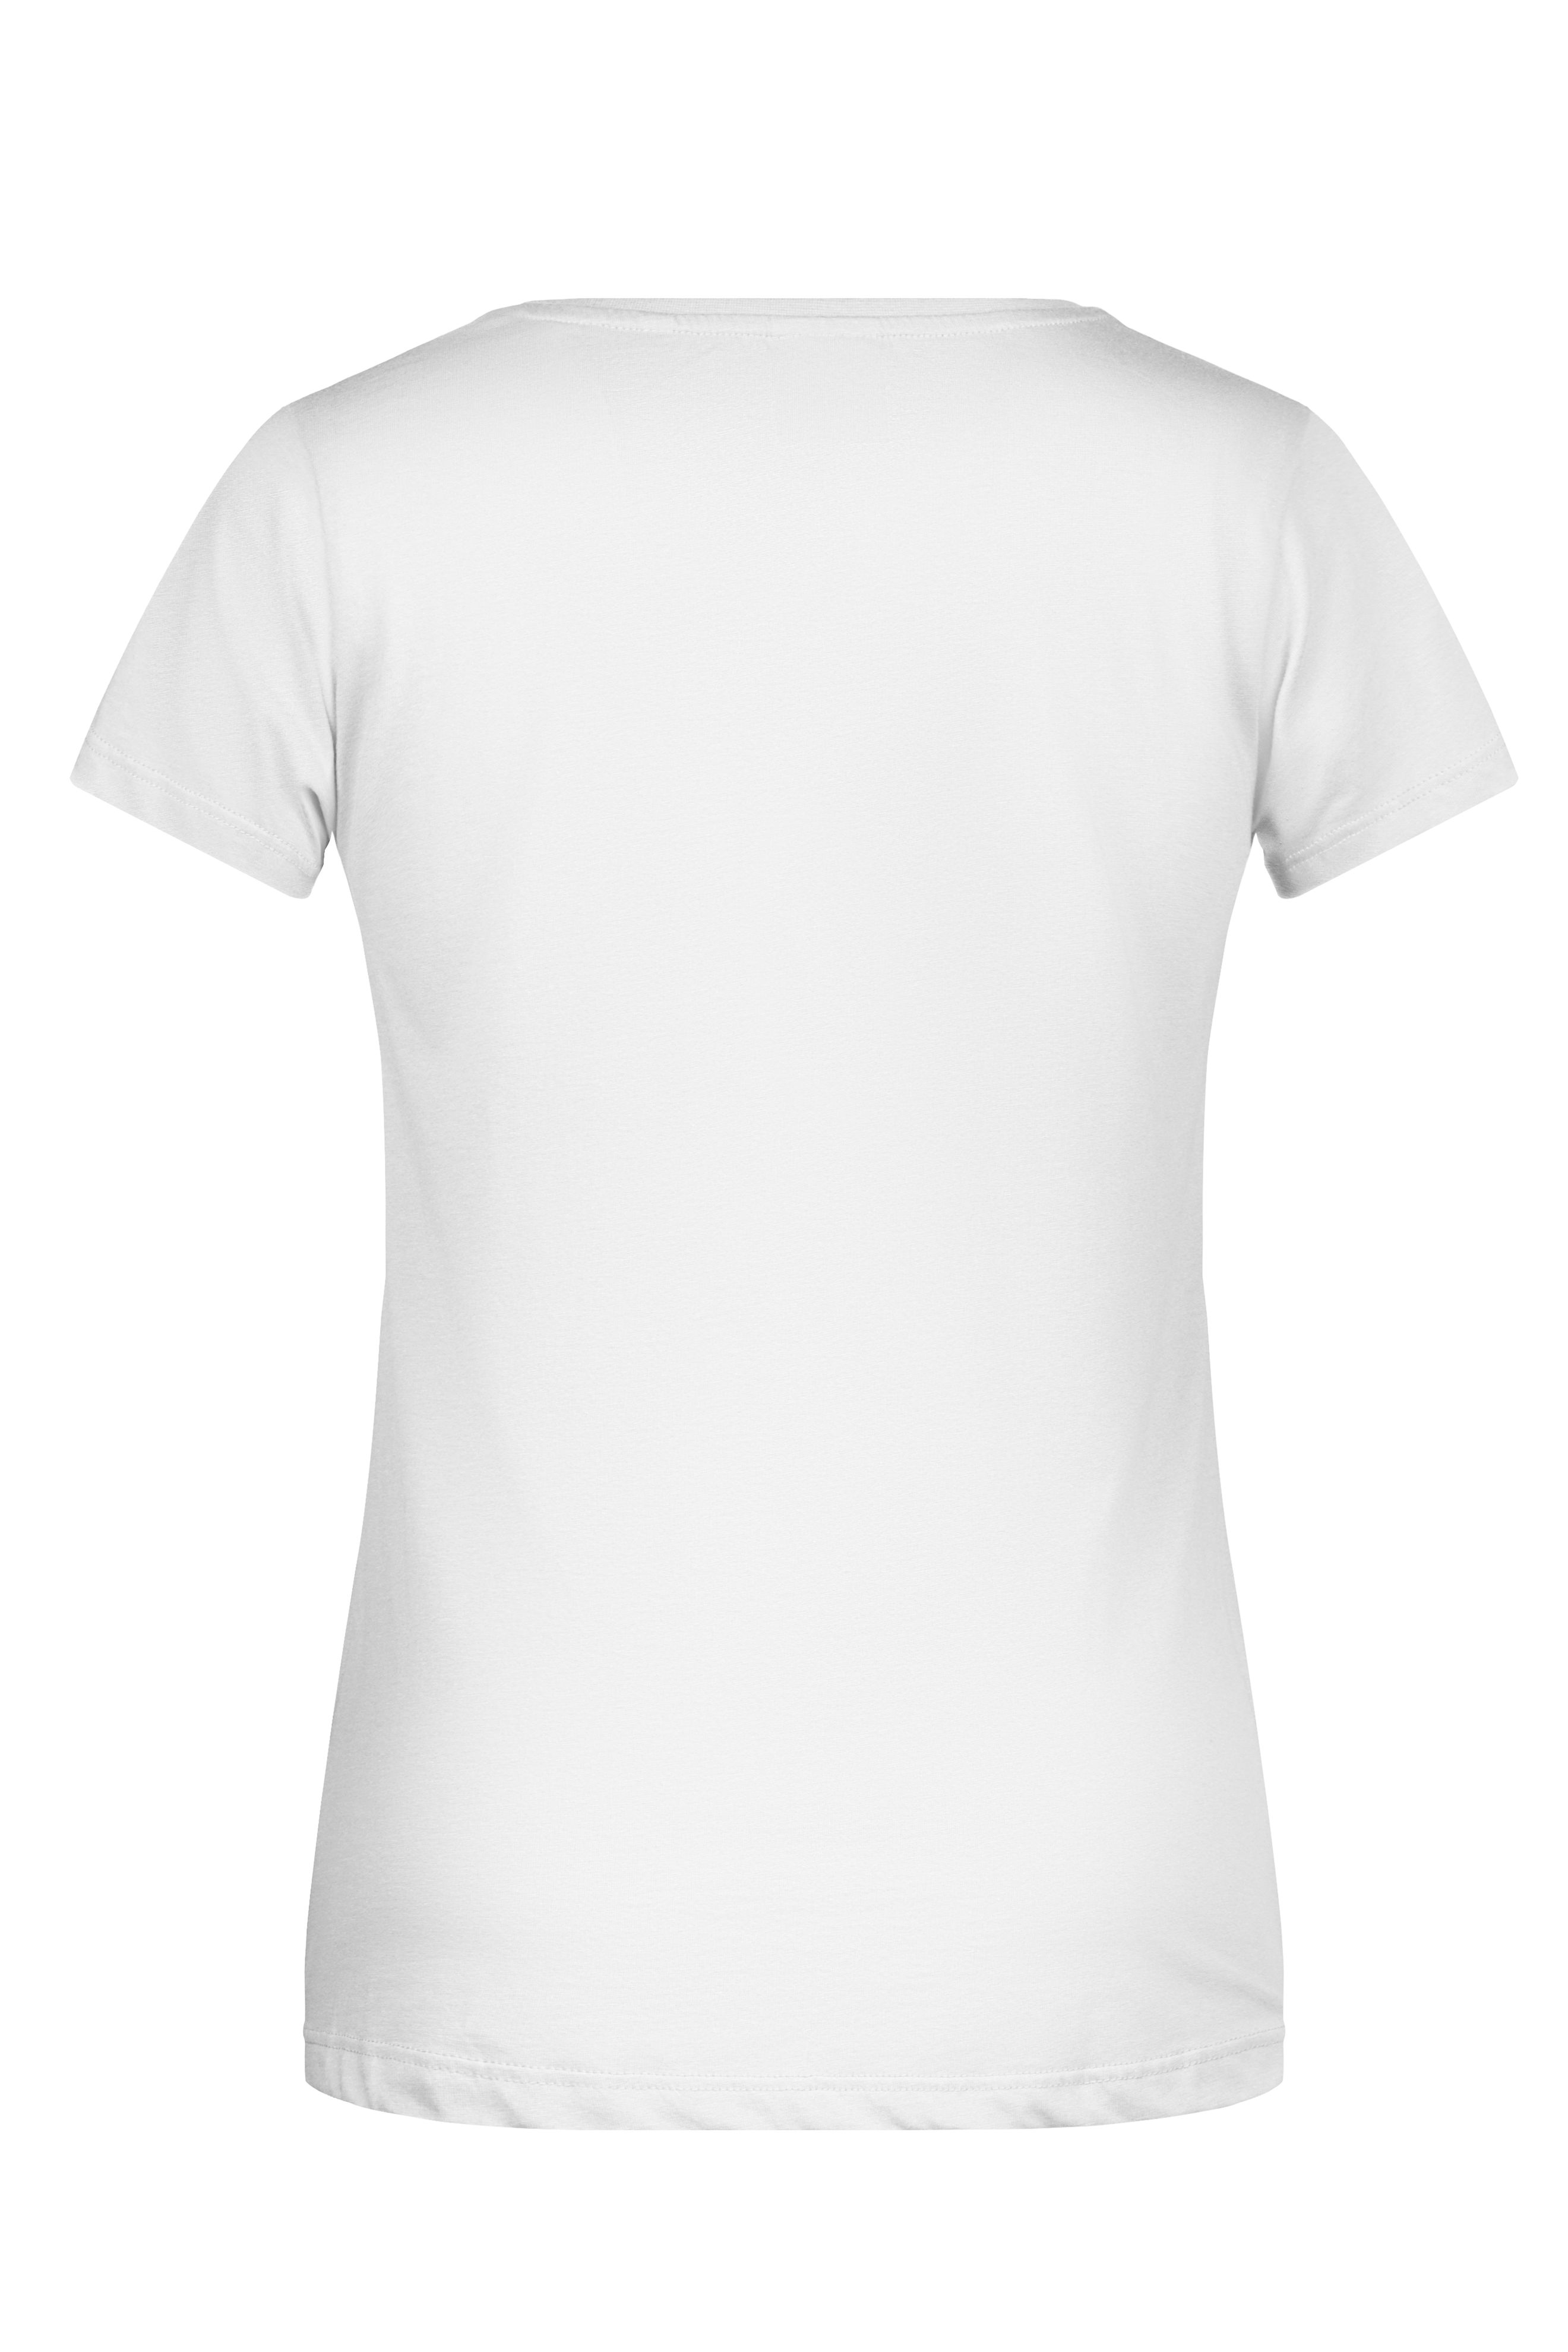 Ladies'-T Pocket 8003 T-Shirt mit modischer Brusttasche